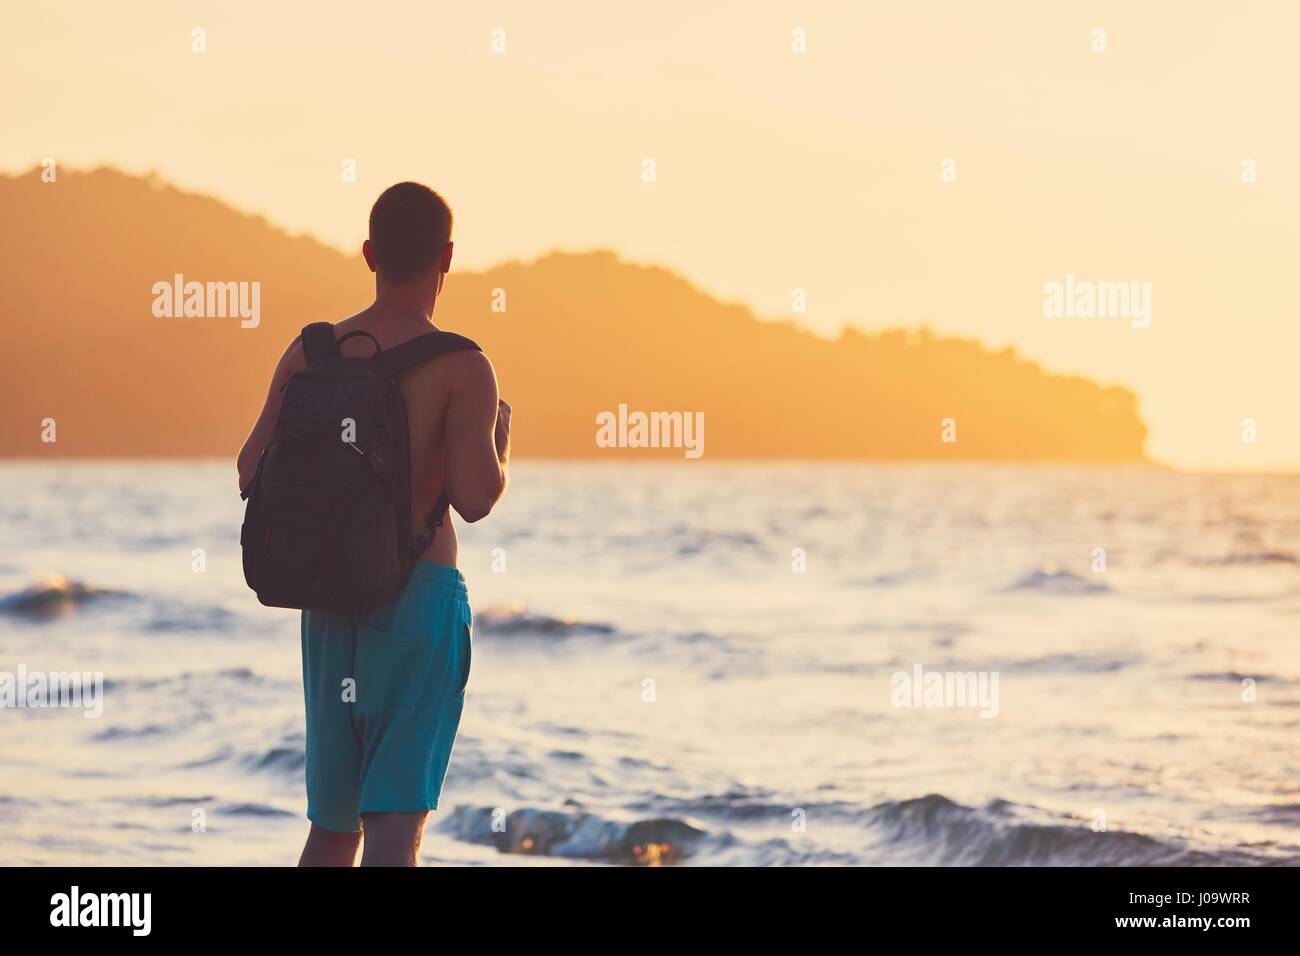 Junge Reisende mit Rucksack, die herrlichen Sonnenuntergänge beobachten. Urlaub am tropischen Strand. Stockfoto